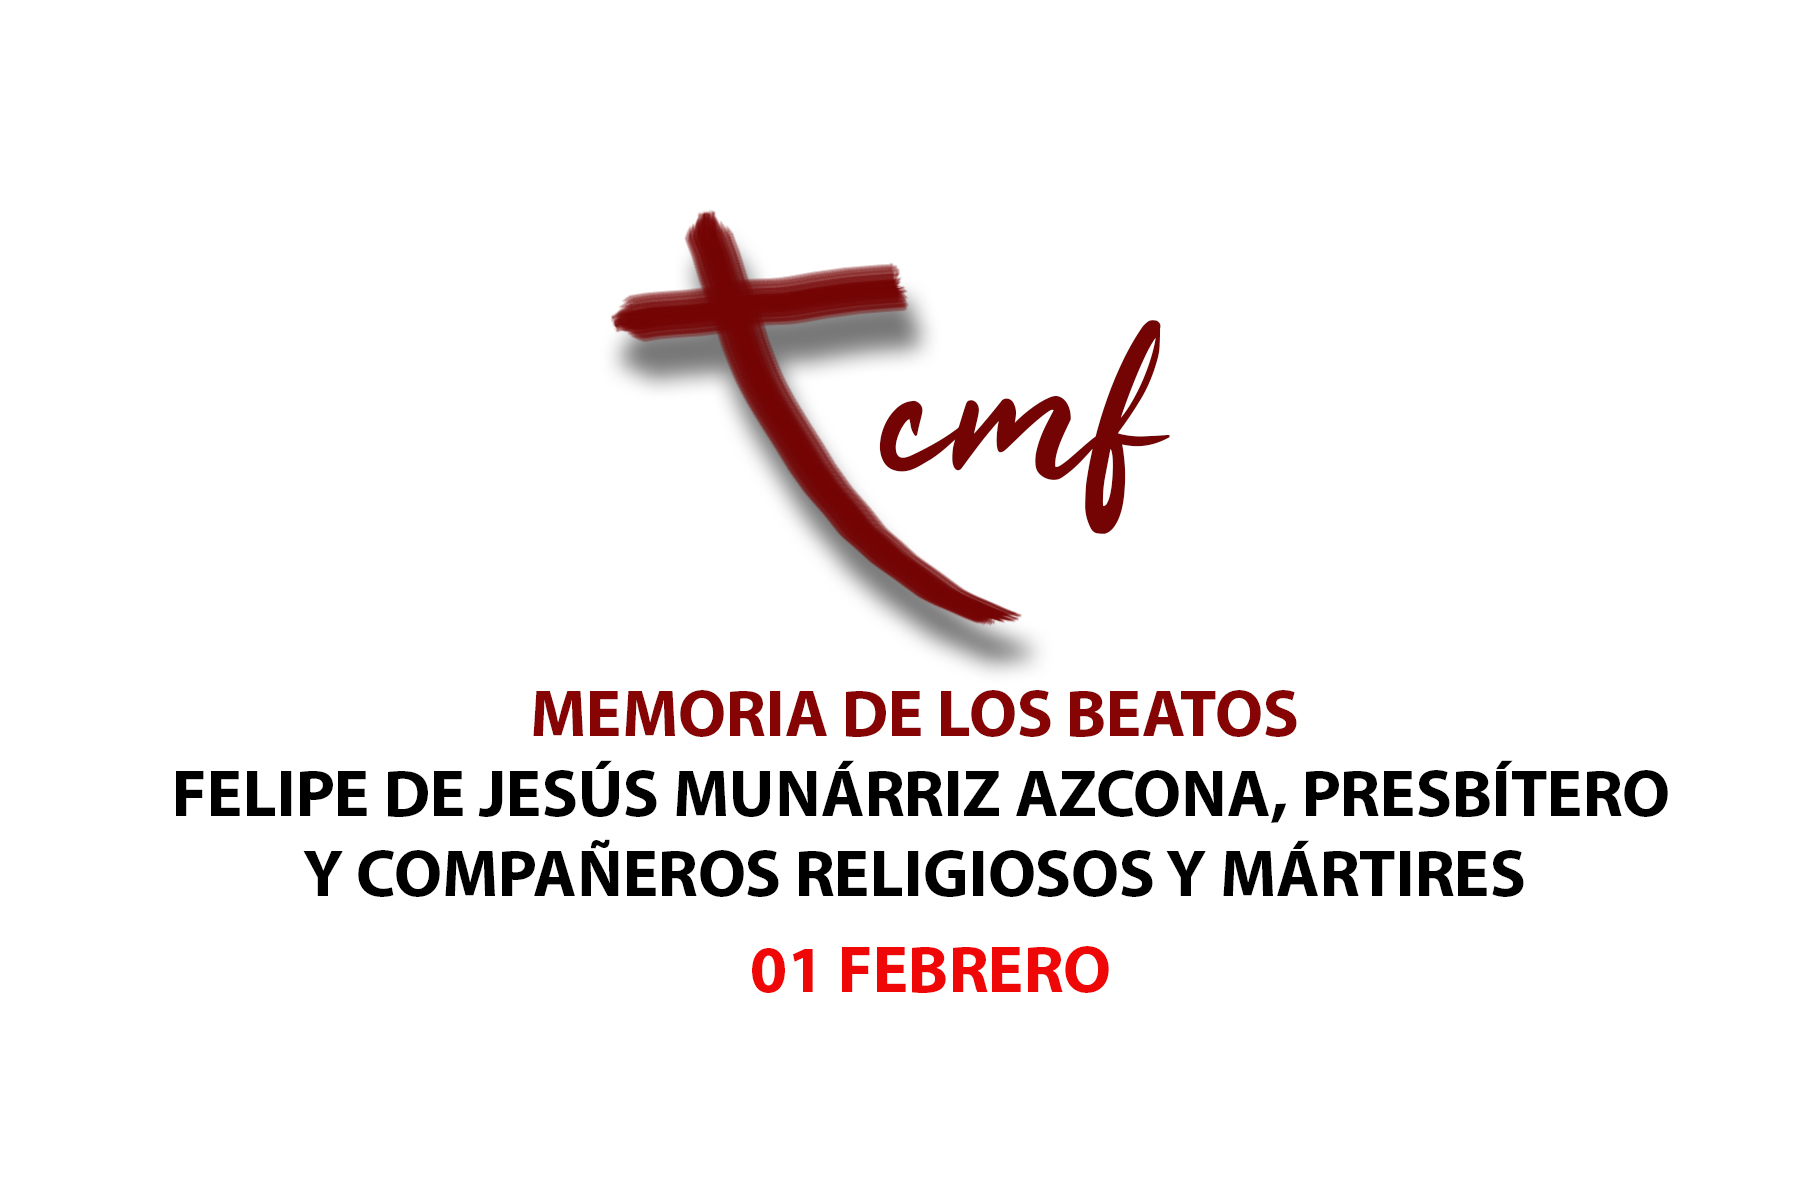 MEMORIA DE LOS BEATOS FELIPE DE JESÚS MUNÁRRIZ AZCONA, PRESBÍTERO Y COMPAÑEROS RELIGIOSOS Y MÁRTIRES